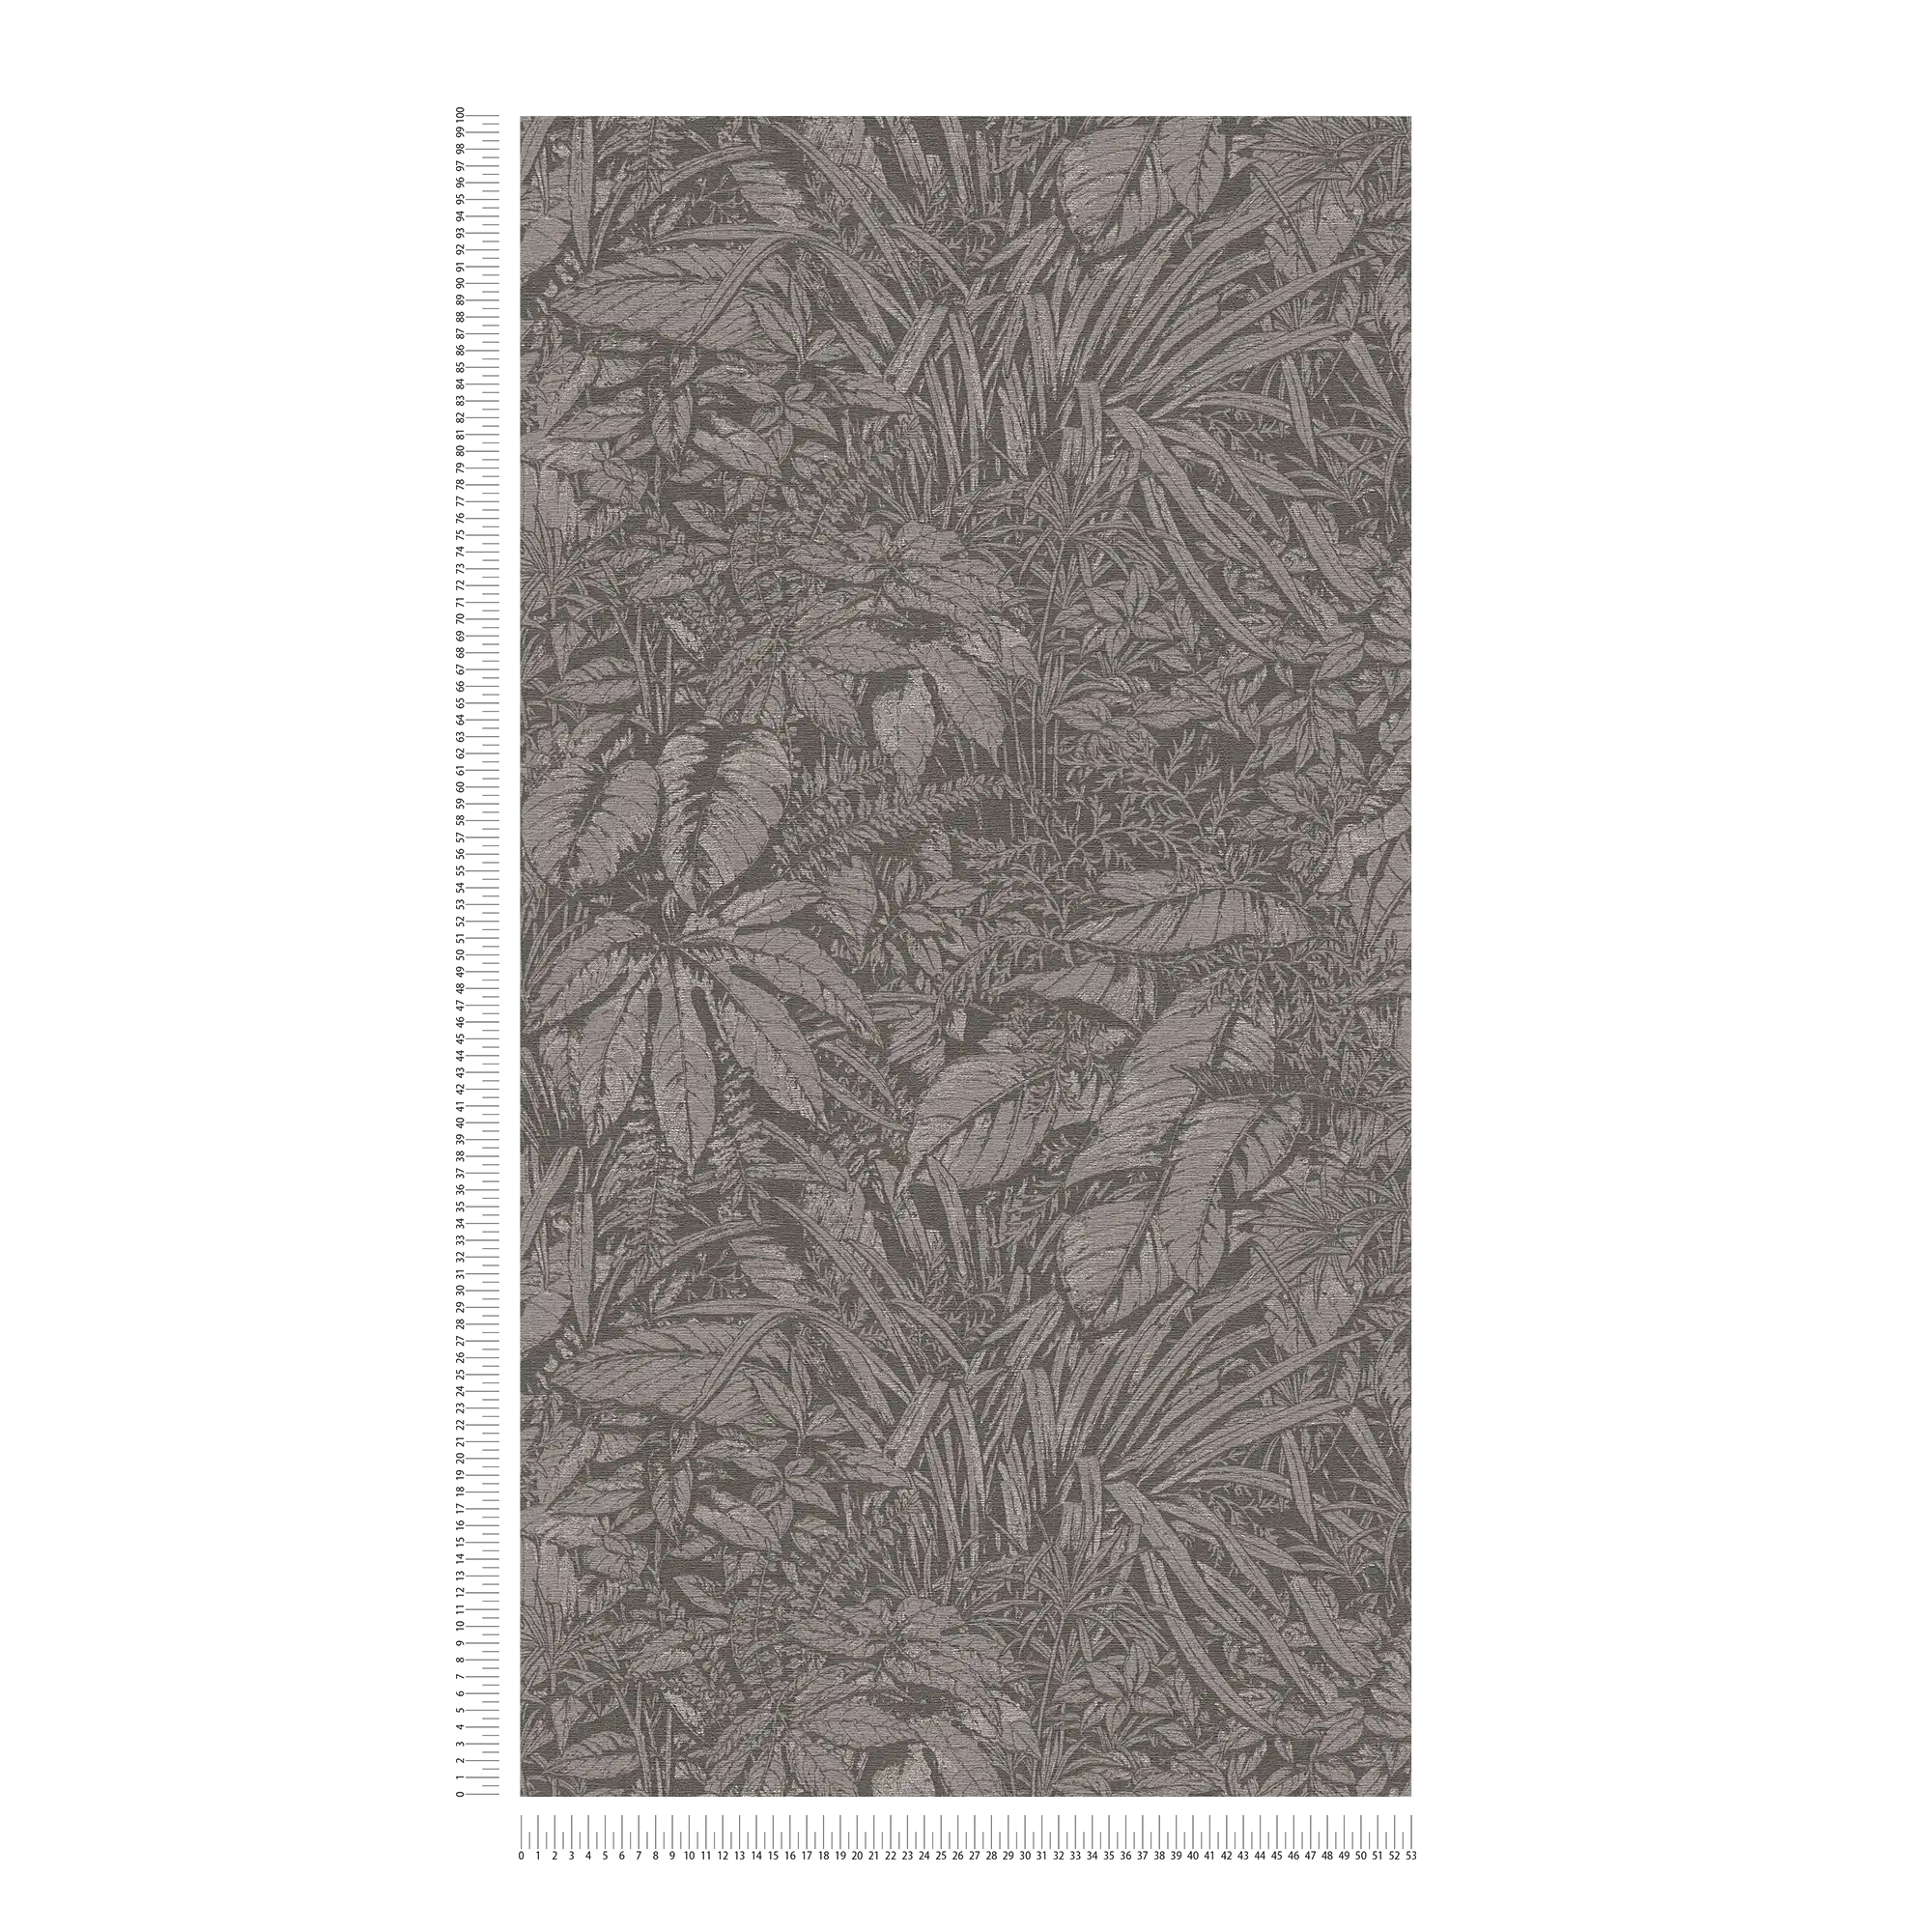             Vliesbehang met bloemenbladmotief - grijs, zwart, zilver
        